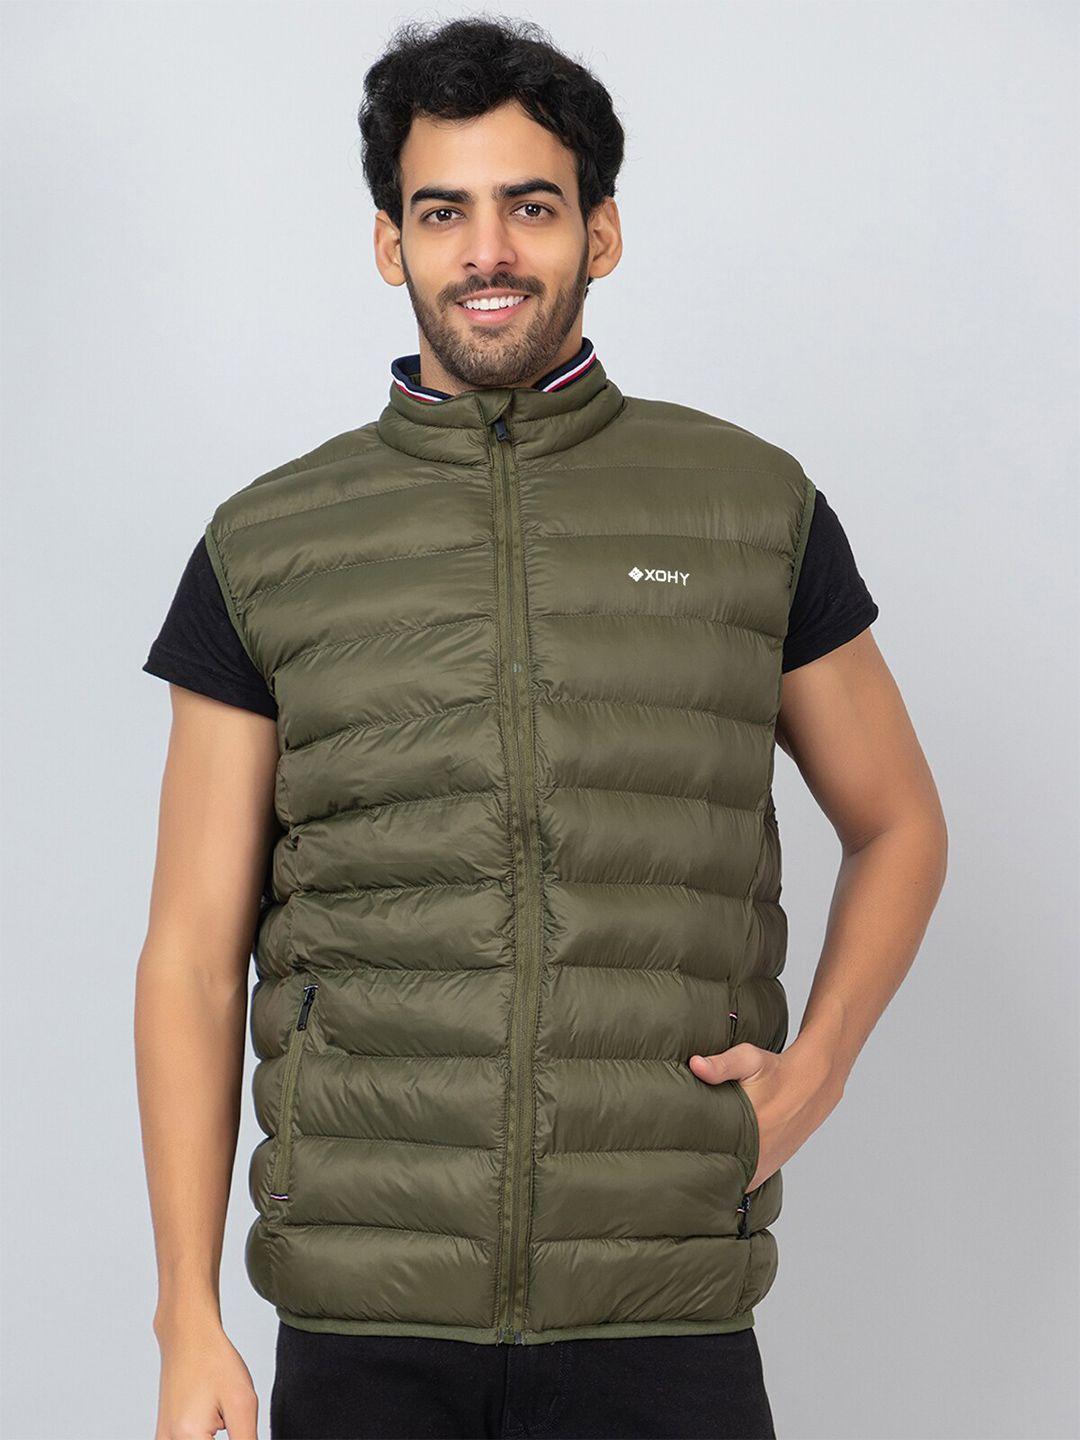 xohy-mock-collar-lightweight-cotton-puffer-jacket